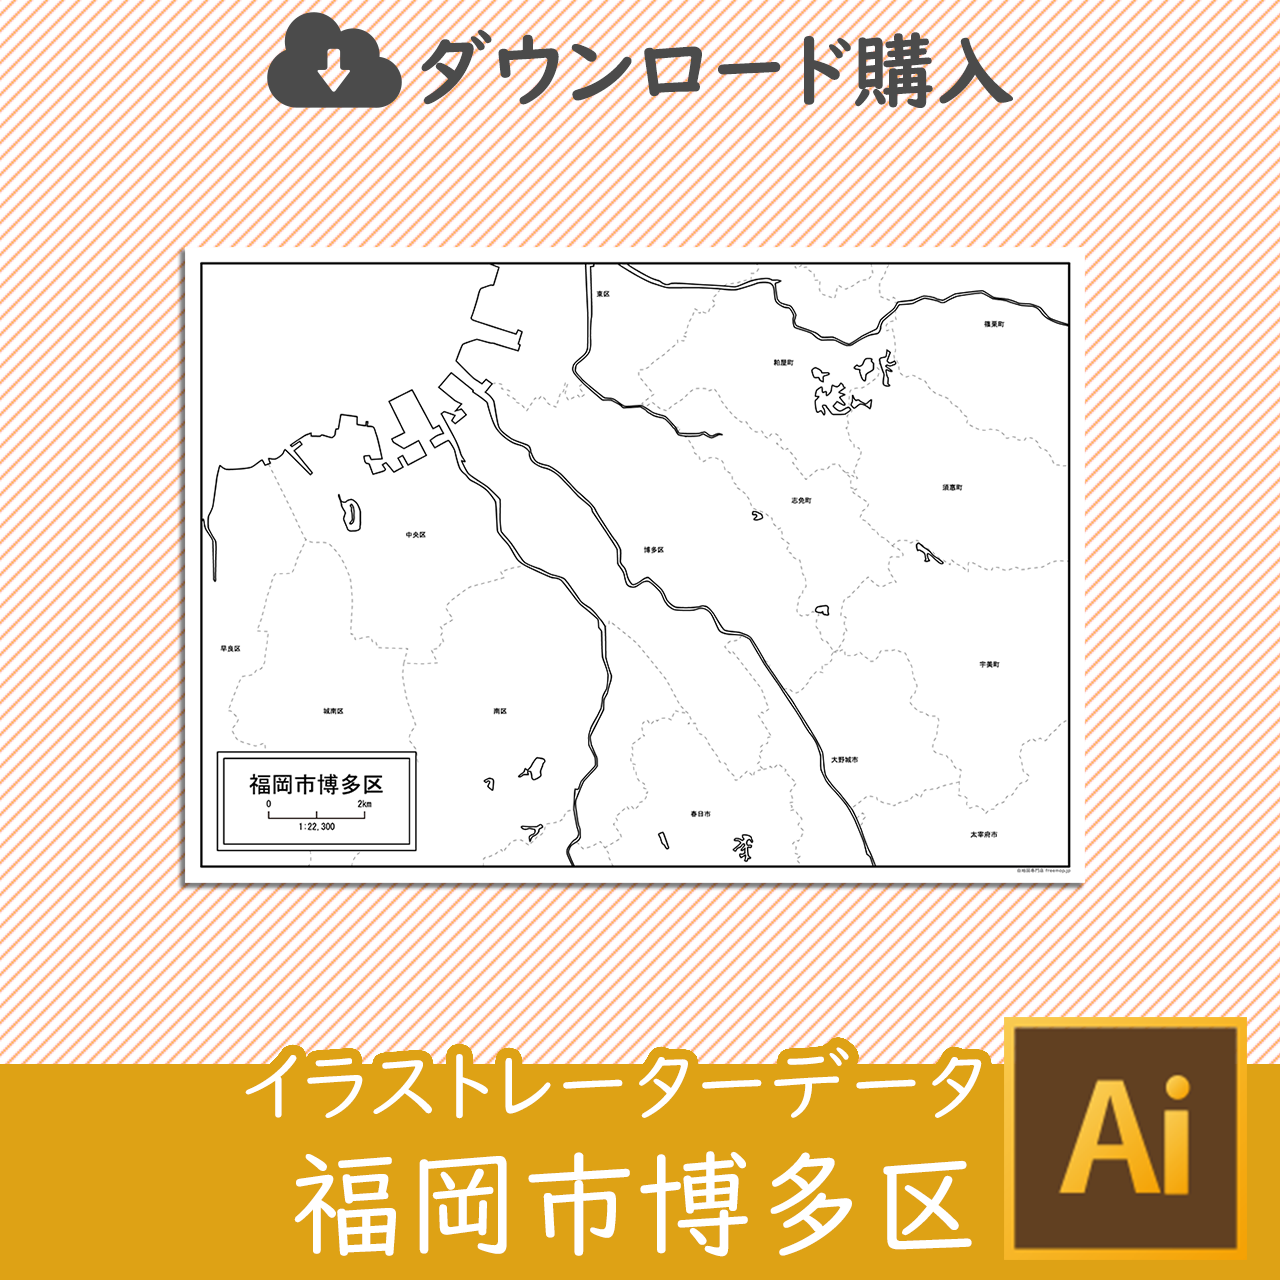 福岡市博多区のaiデータのサムネイル画像